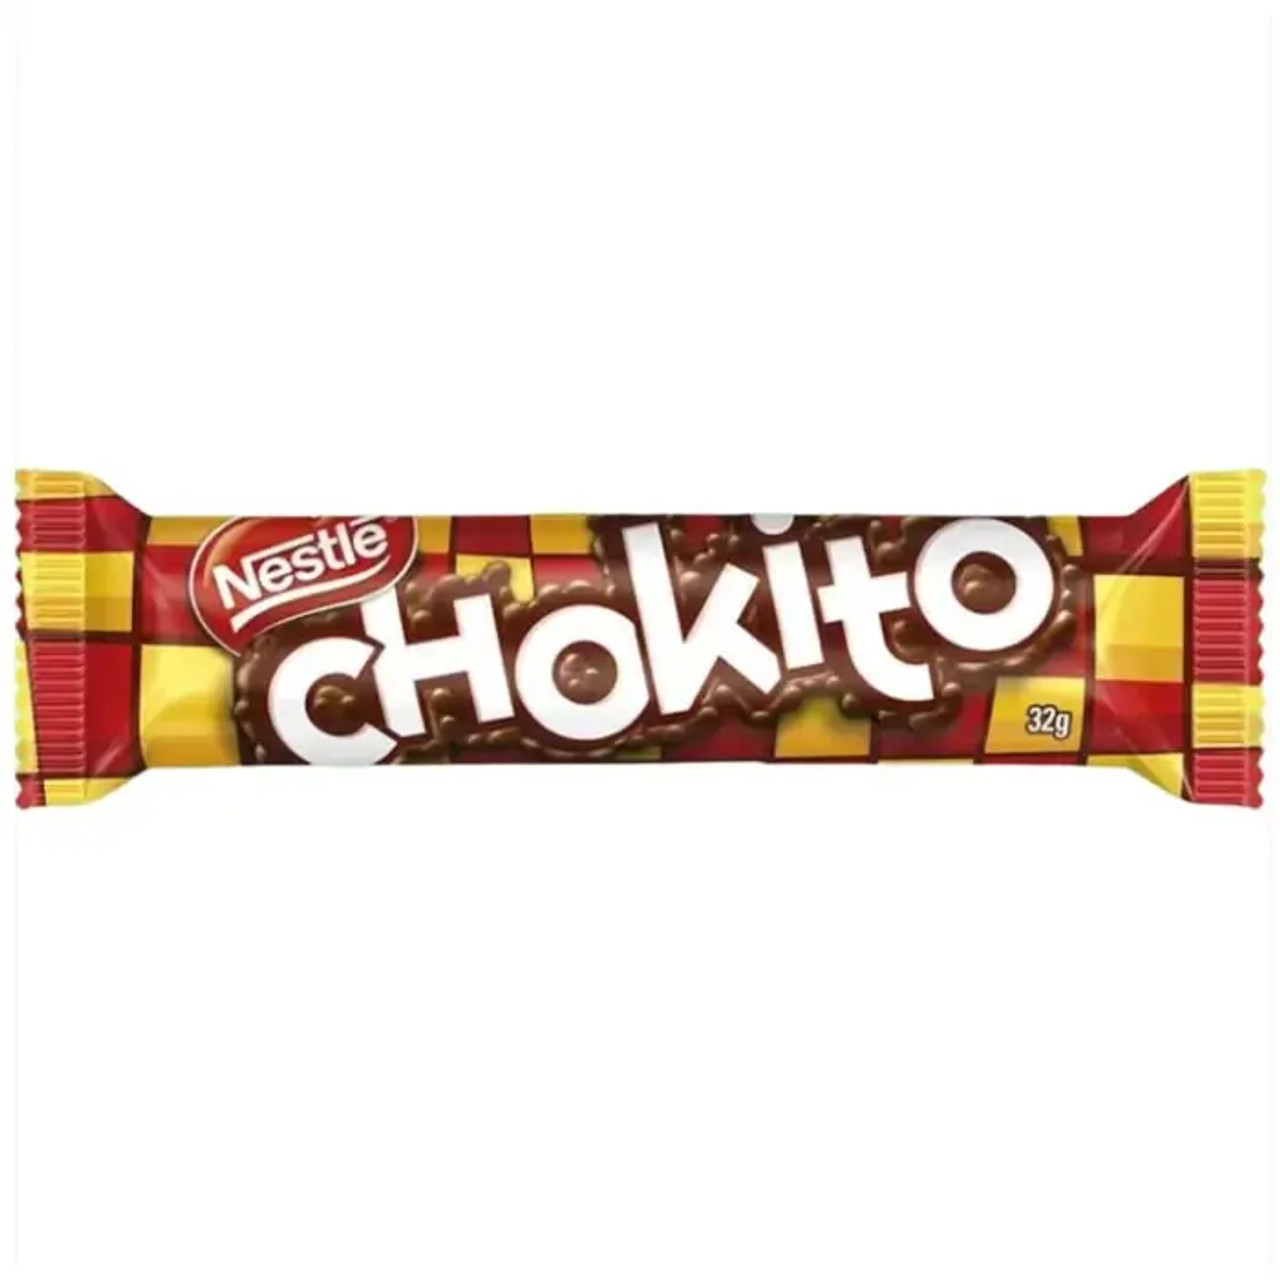 NESTLE Chokito Chocolate Bar 30-CASE - 32g Each | Crunchy Caramel Delight - Chicken Pieces